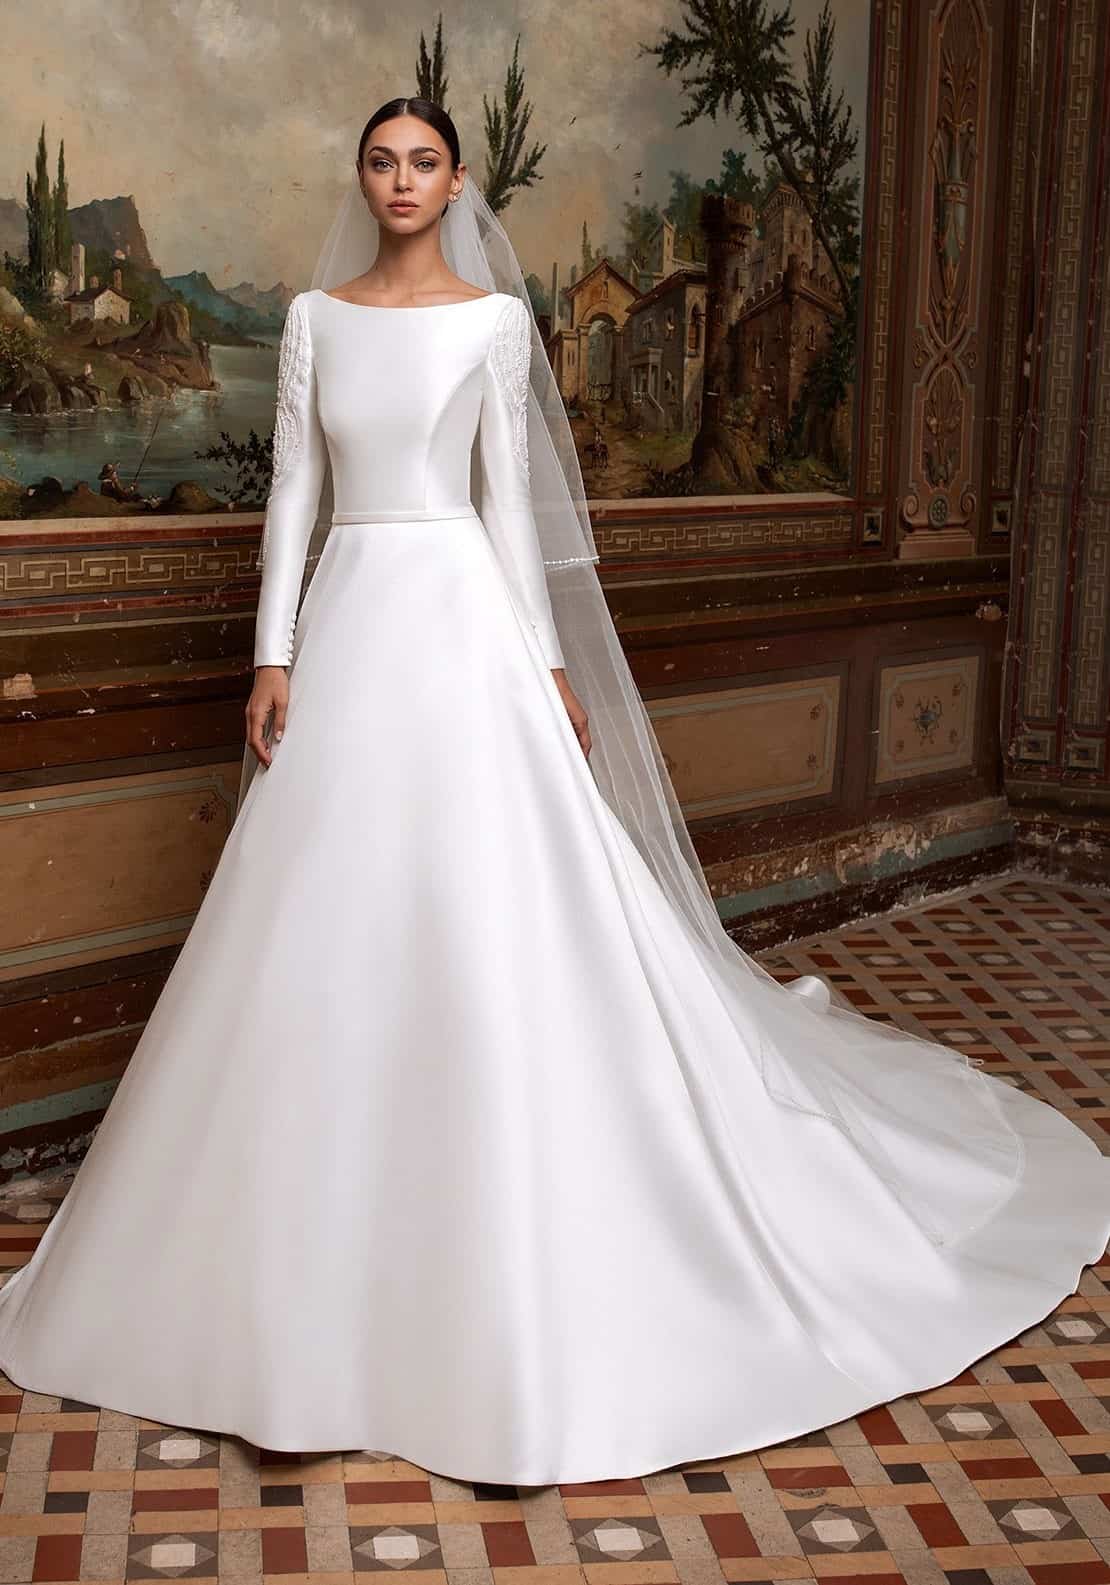 شادی شدہ عورت کے لیے سفید لباس کے بارے میں خواب کی تعبیر